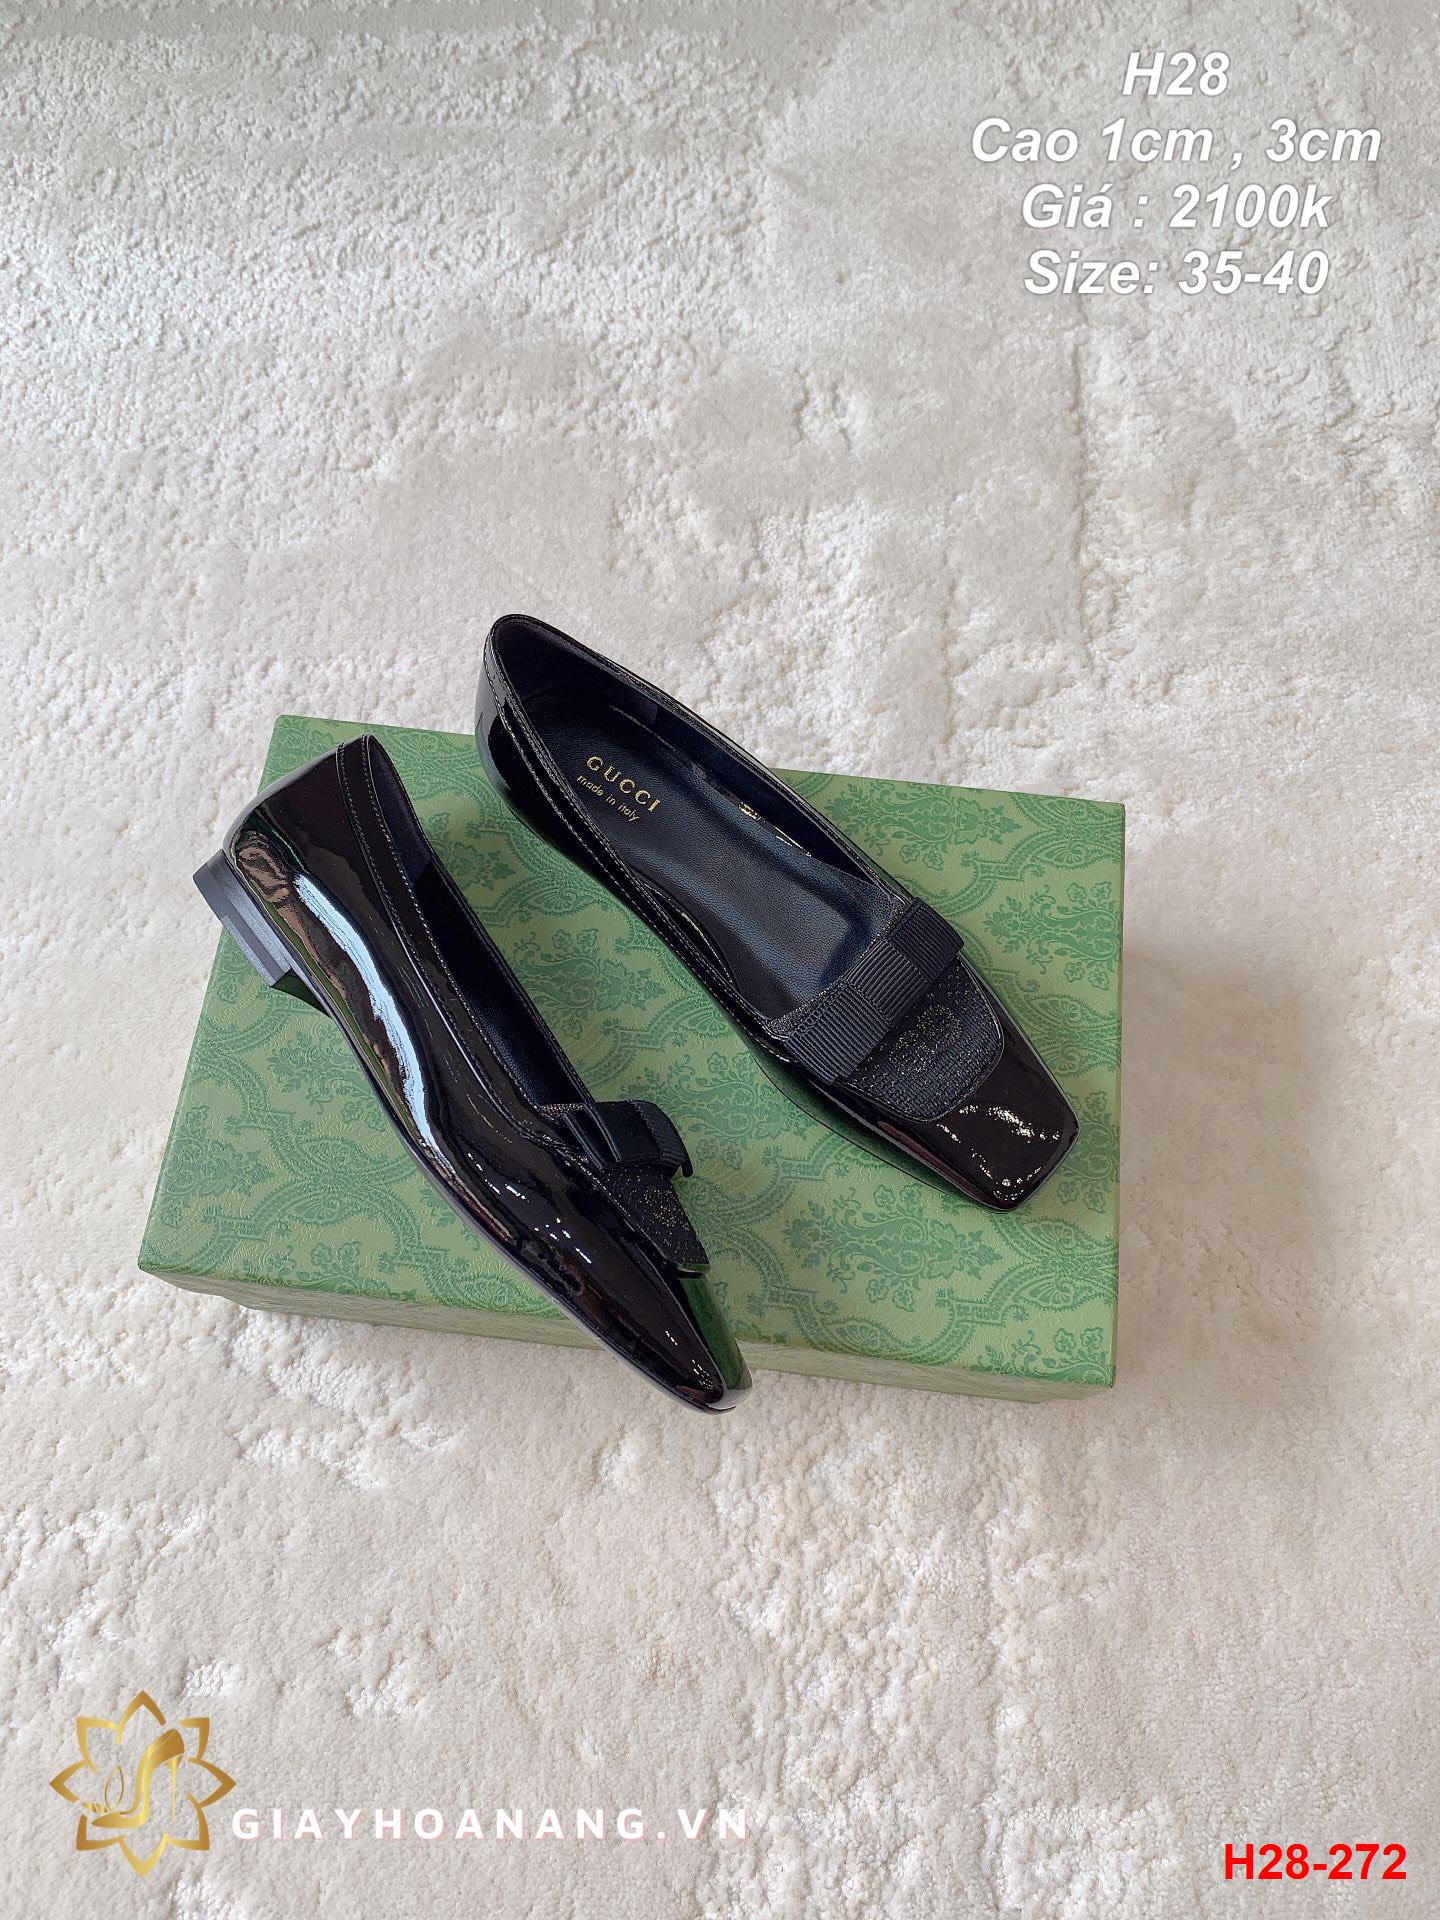 H28-272 Gucci giày cao 1cm , 3cm siêu cấp